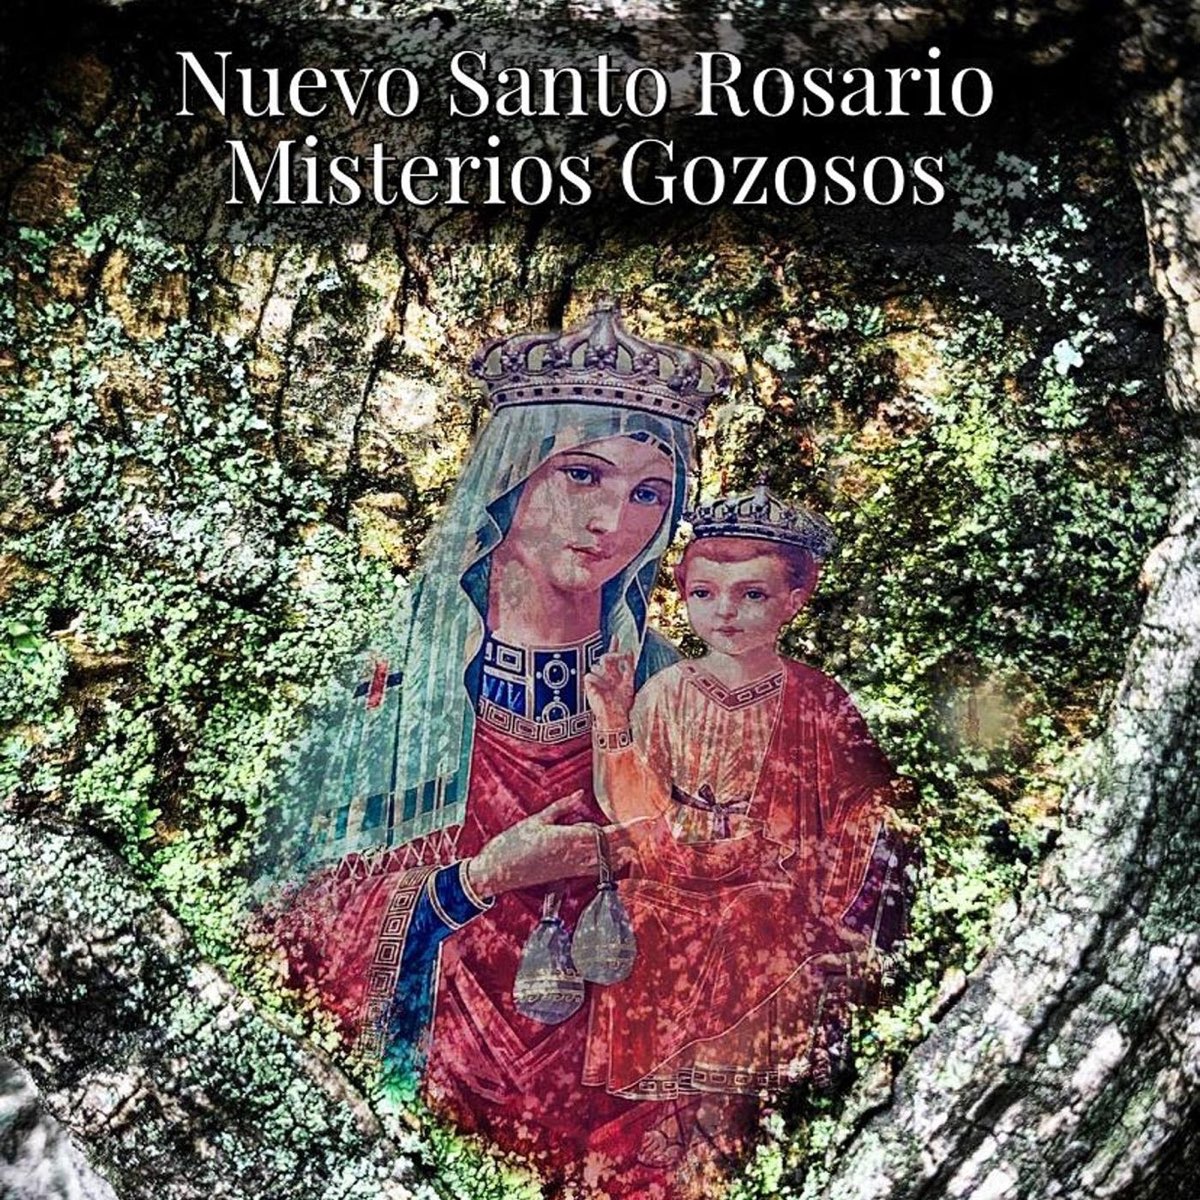 Nuevo Santo Rosario: Misterios Gozosos by Audios de Fe on Apple Music